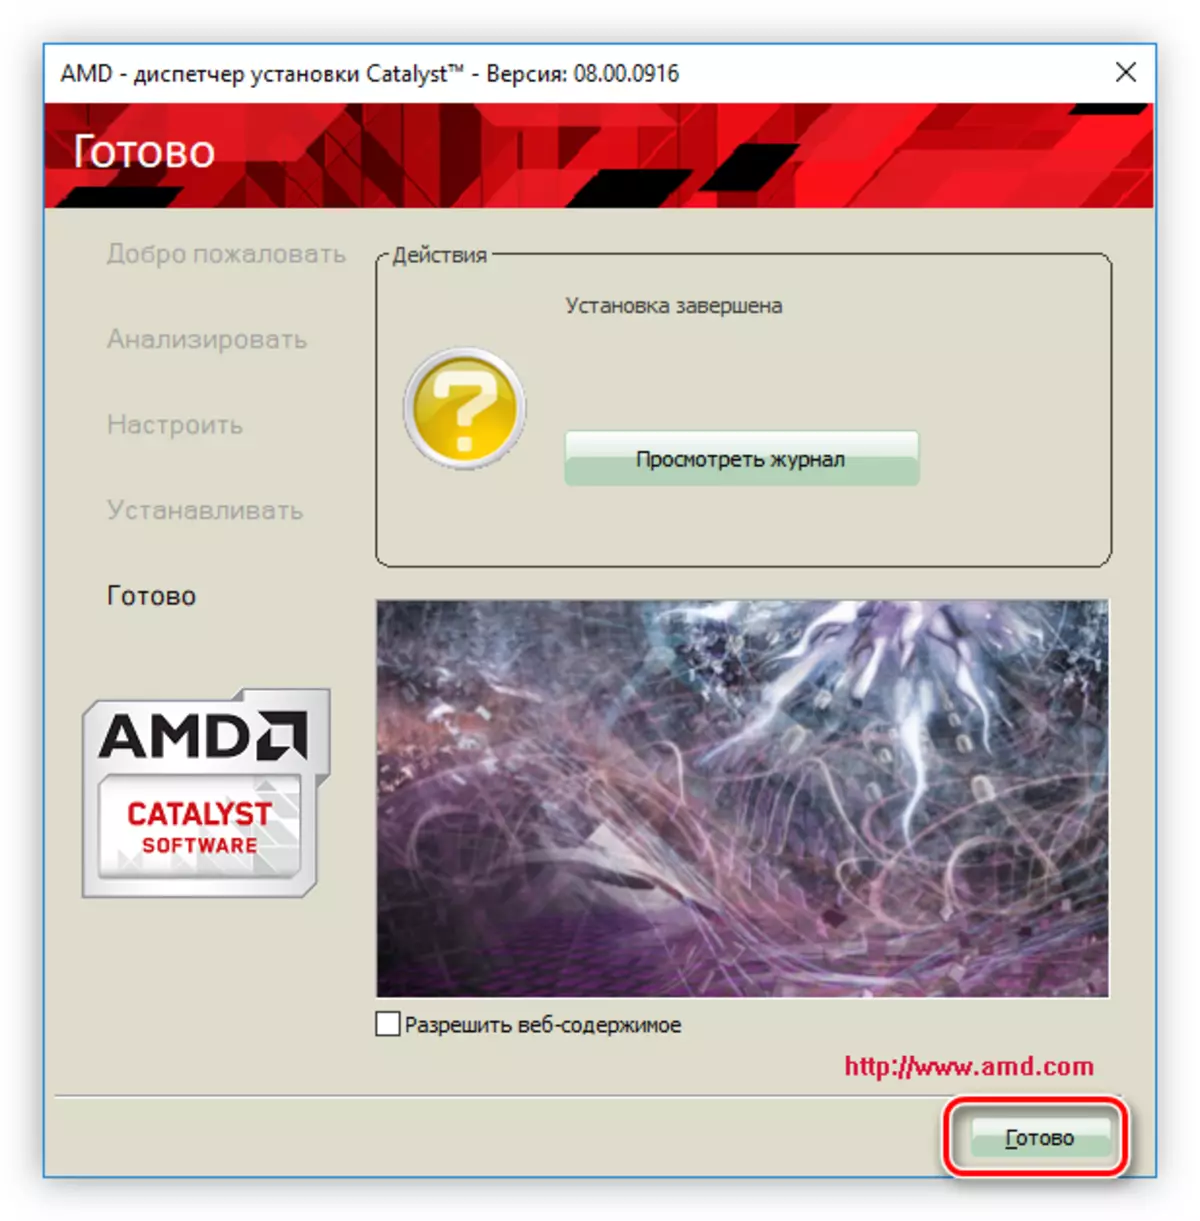 完成對AMD的Radeon HD 7640G顯卡驅動程序的安裝